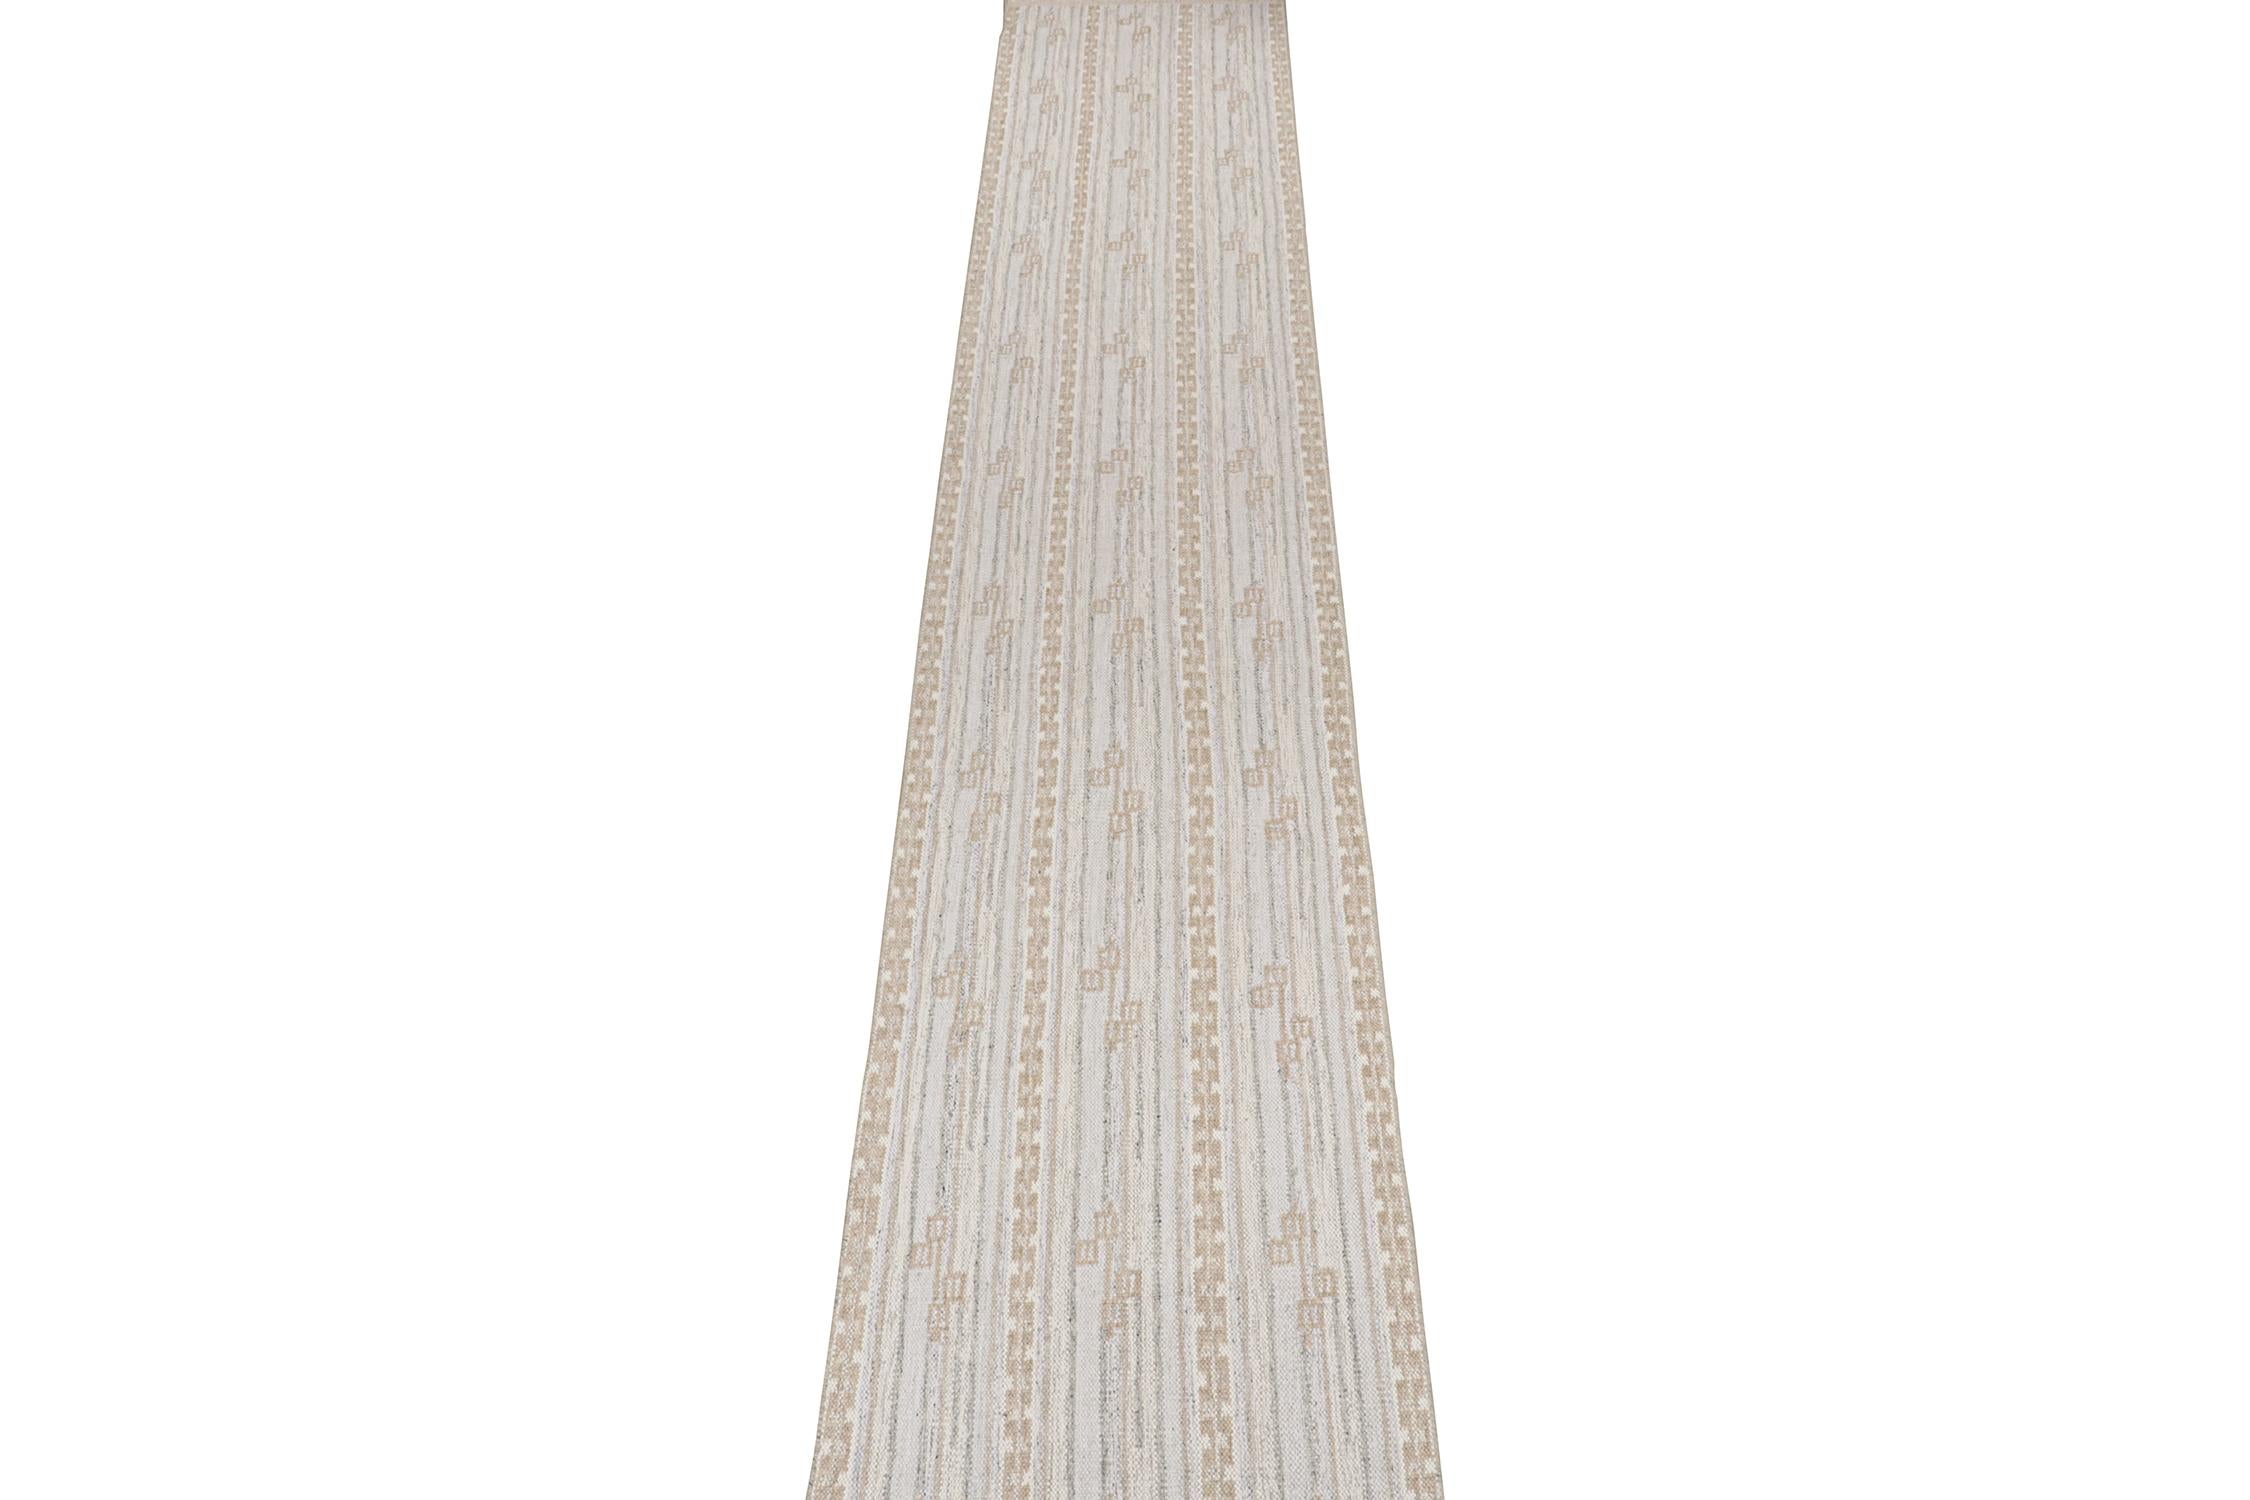 Ce kilim 3x36 de style suédois est un nouvel ajout à la collection primée de Rug & Kilim en tissage plat scandinave. 

Plus loin dans le Design : 

Cette coulisse extra-longue est une version moderne et raffinée du classique Déco suédois. Son